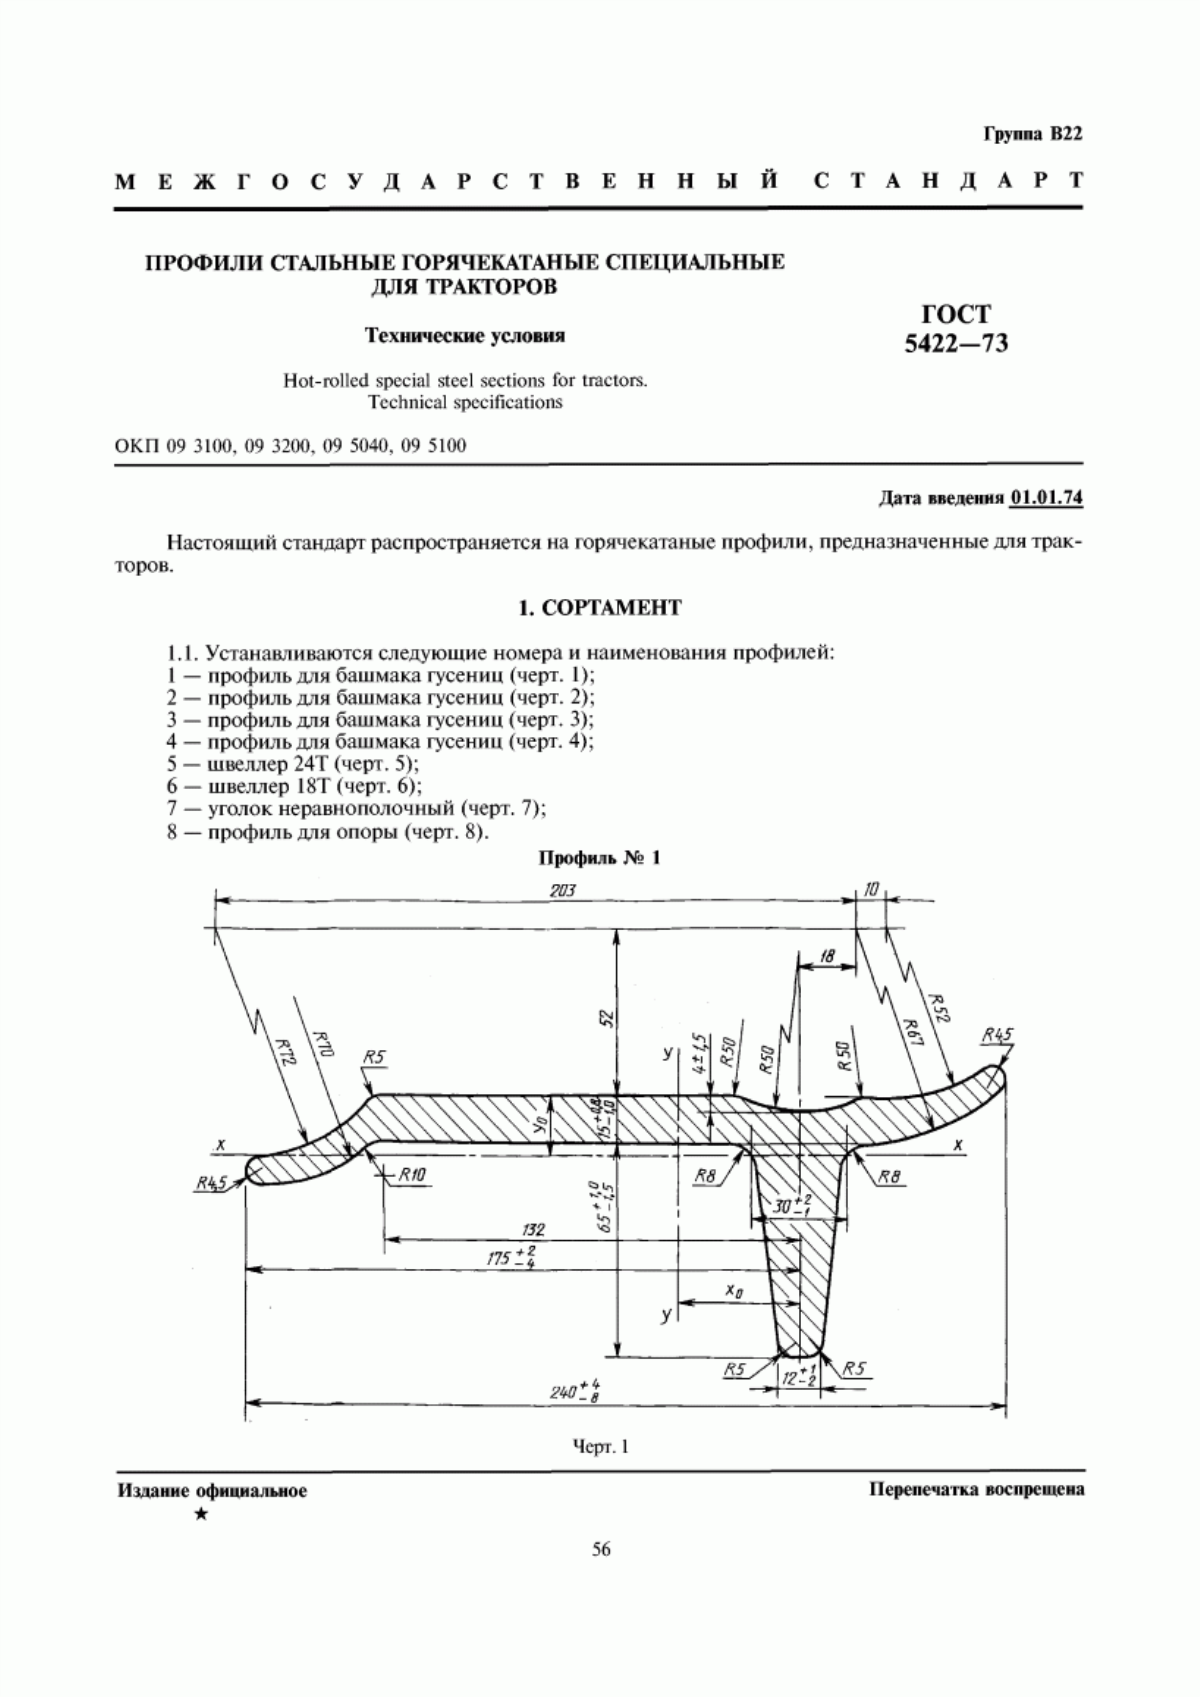 ГОСТ 5422-73 Профили стальные горячекатаные специальные для тракторов. Технические условия